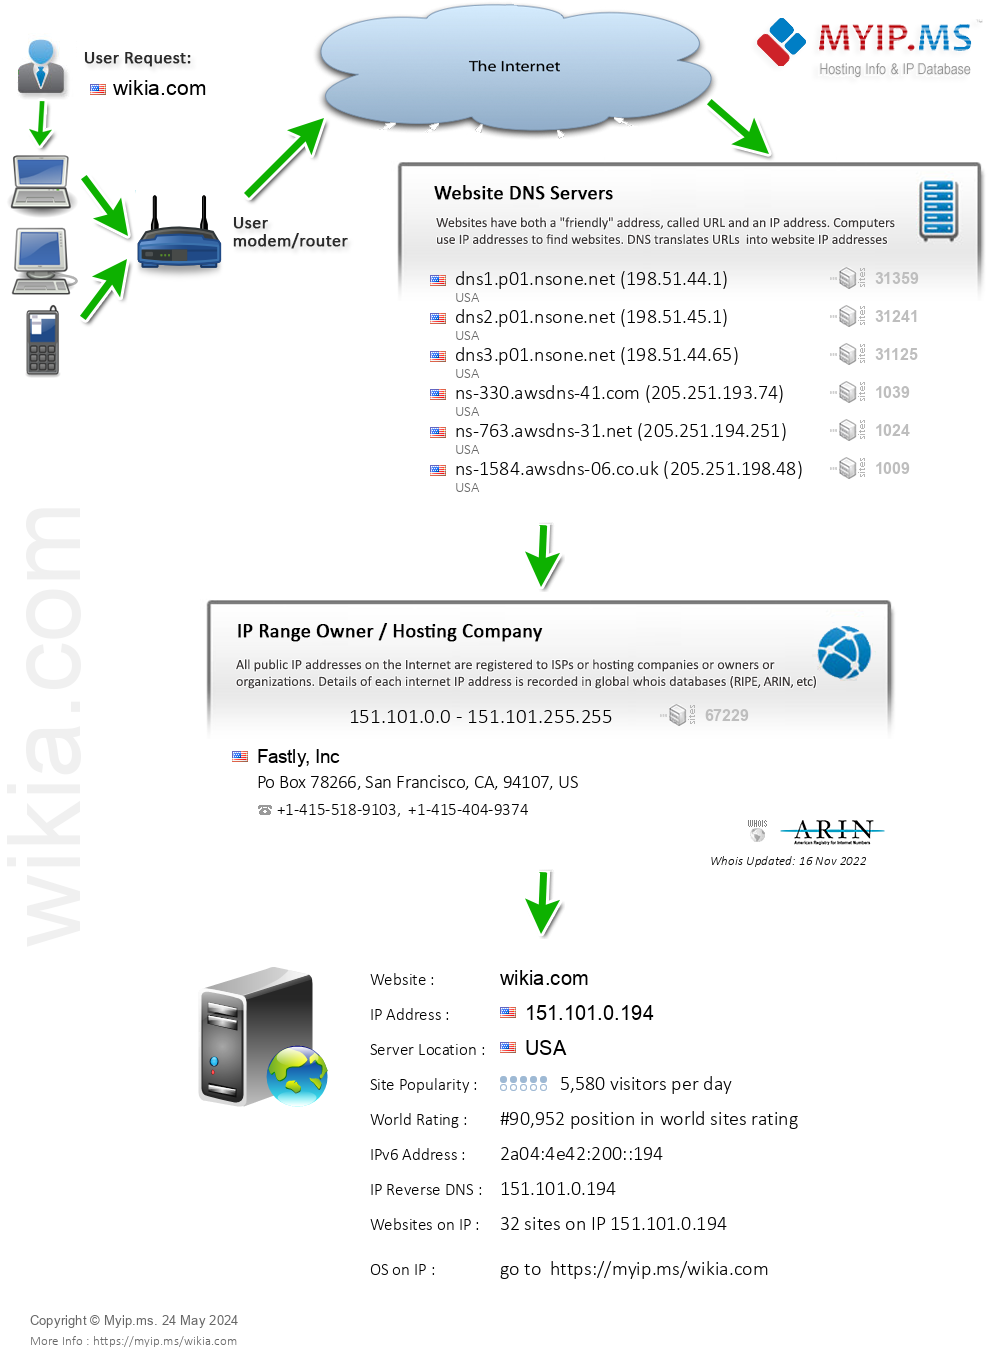 Wikia.com - Website Hosting Visual IP Diagram